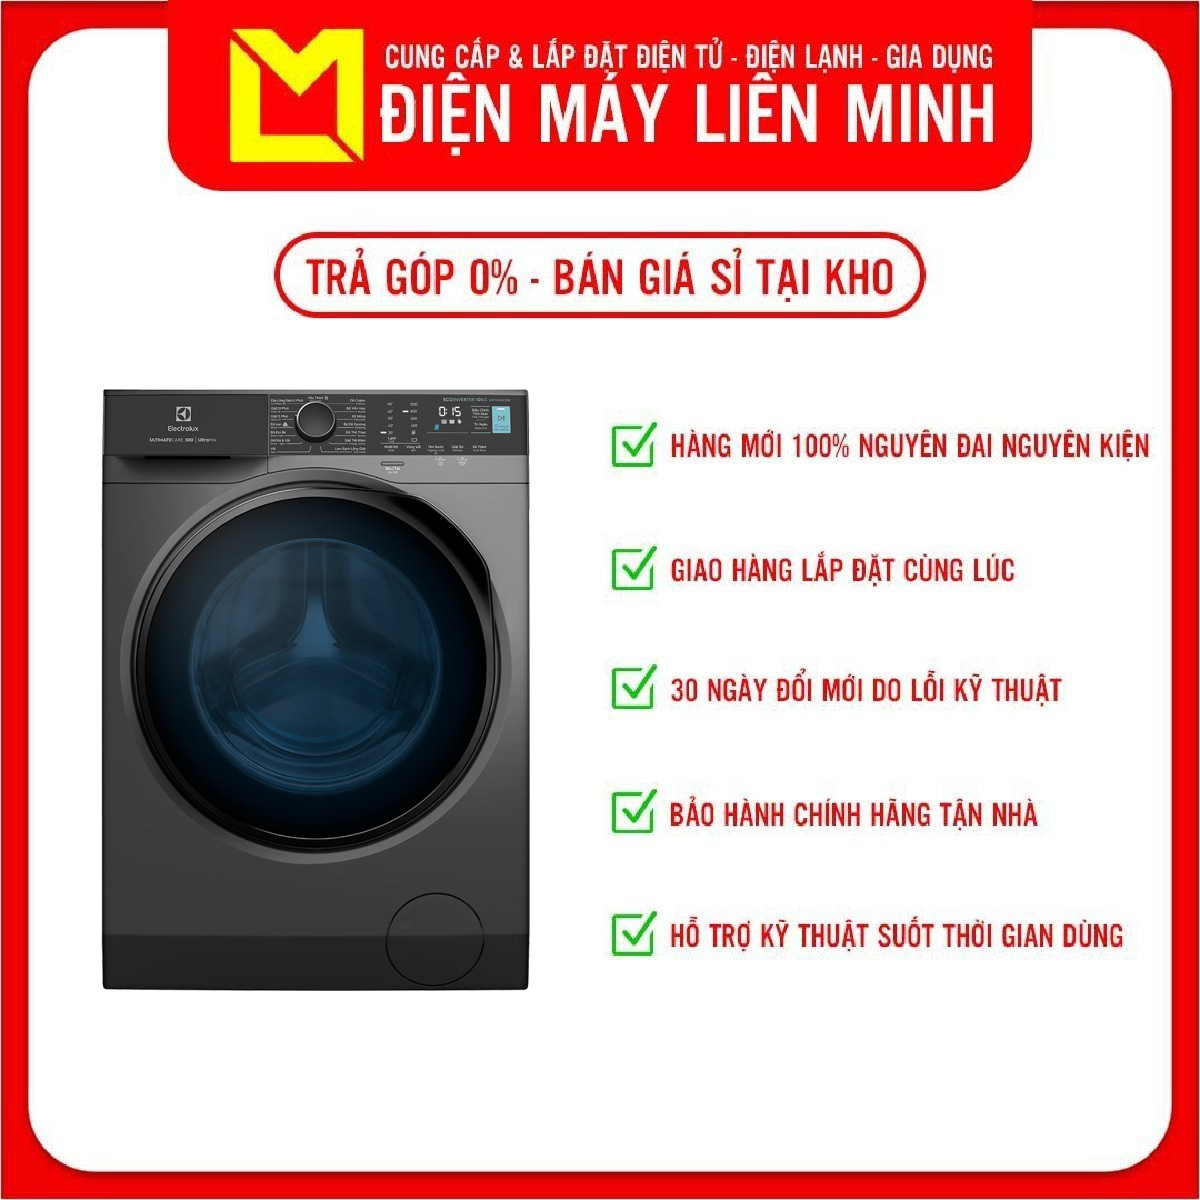 [ Giao Toàn Quốc ] Máy Giặt Electrolux EWF1024P5SB - Hàng Chính Hãng